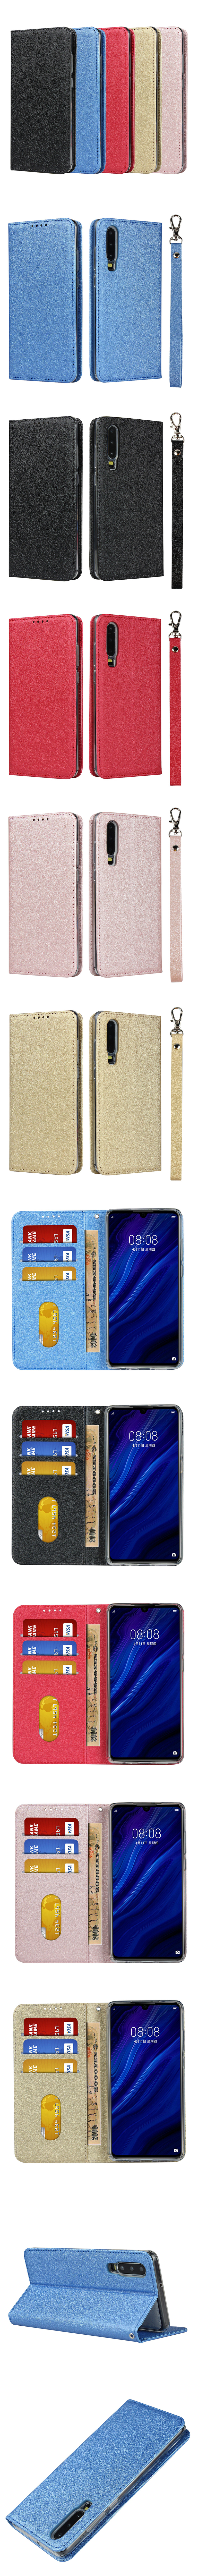 310-Huawei-超薄蠶絲紋手機套皮套